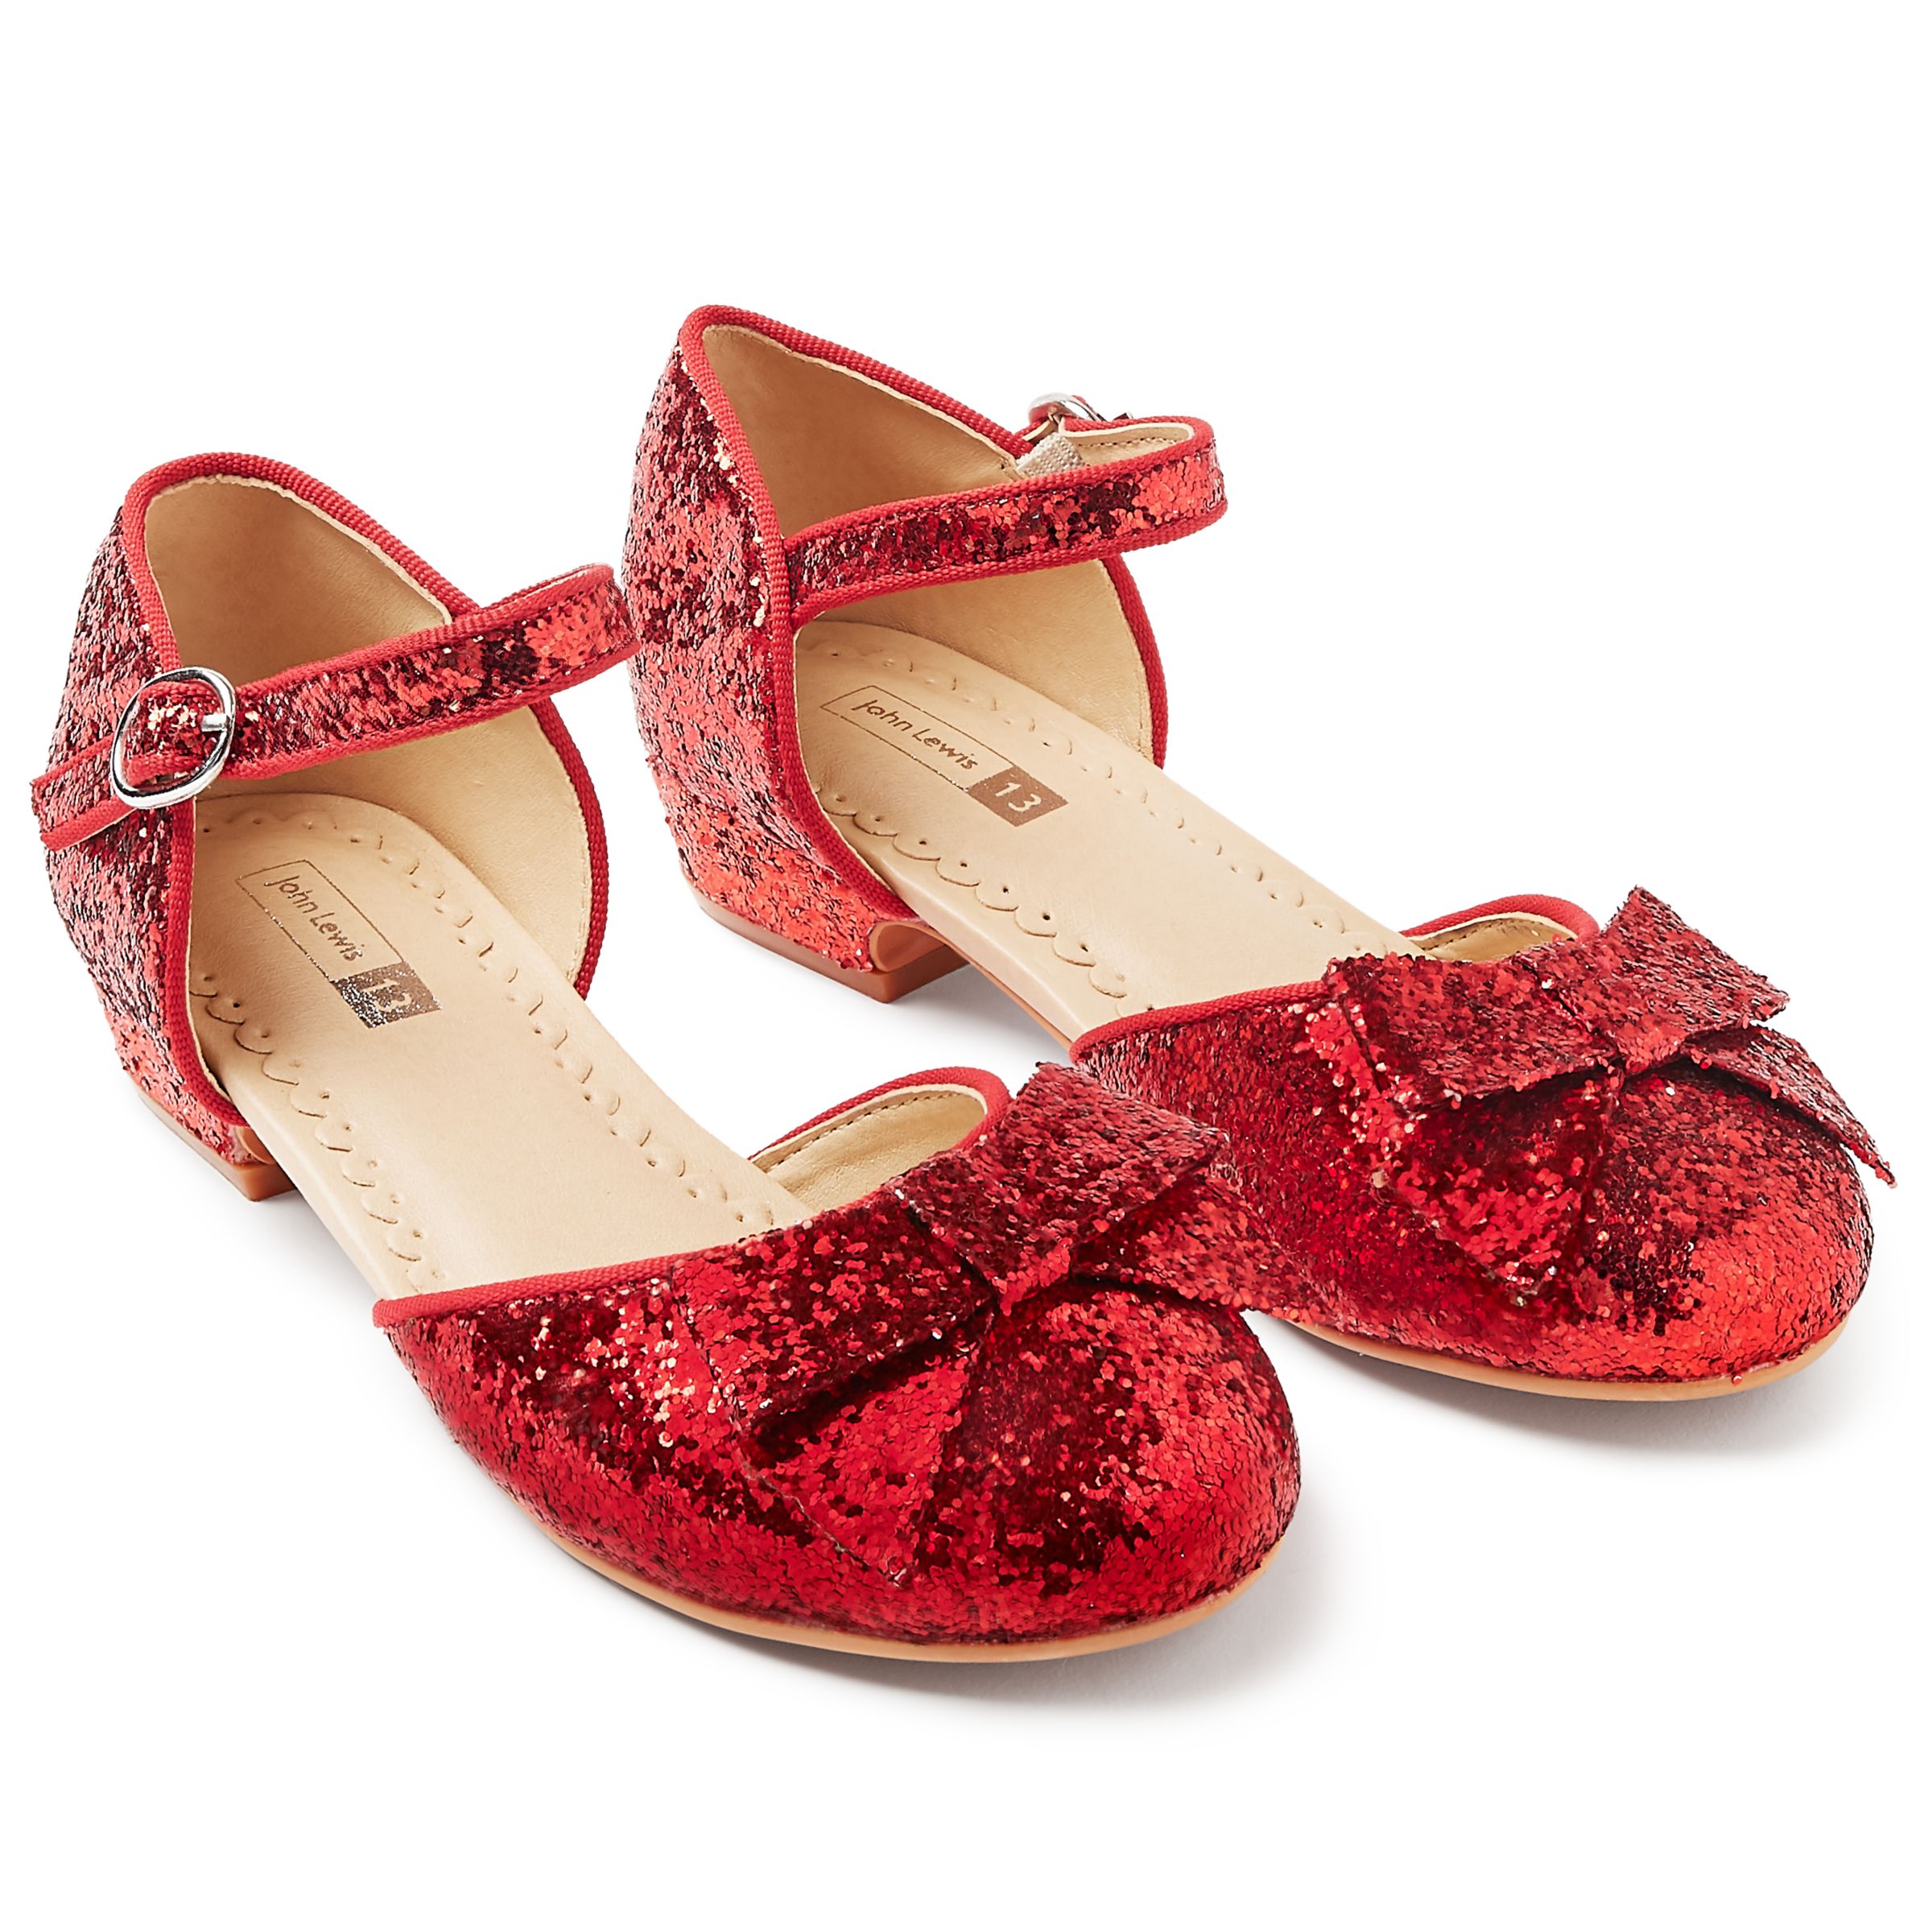 John Lewis & Partners Children's Dorothy Glitter Shoes, Red at John ...